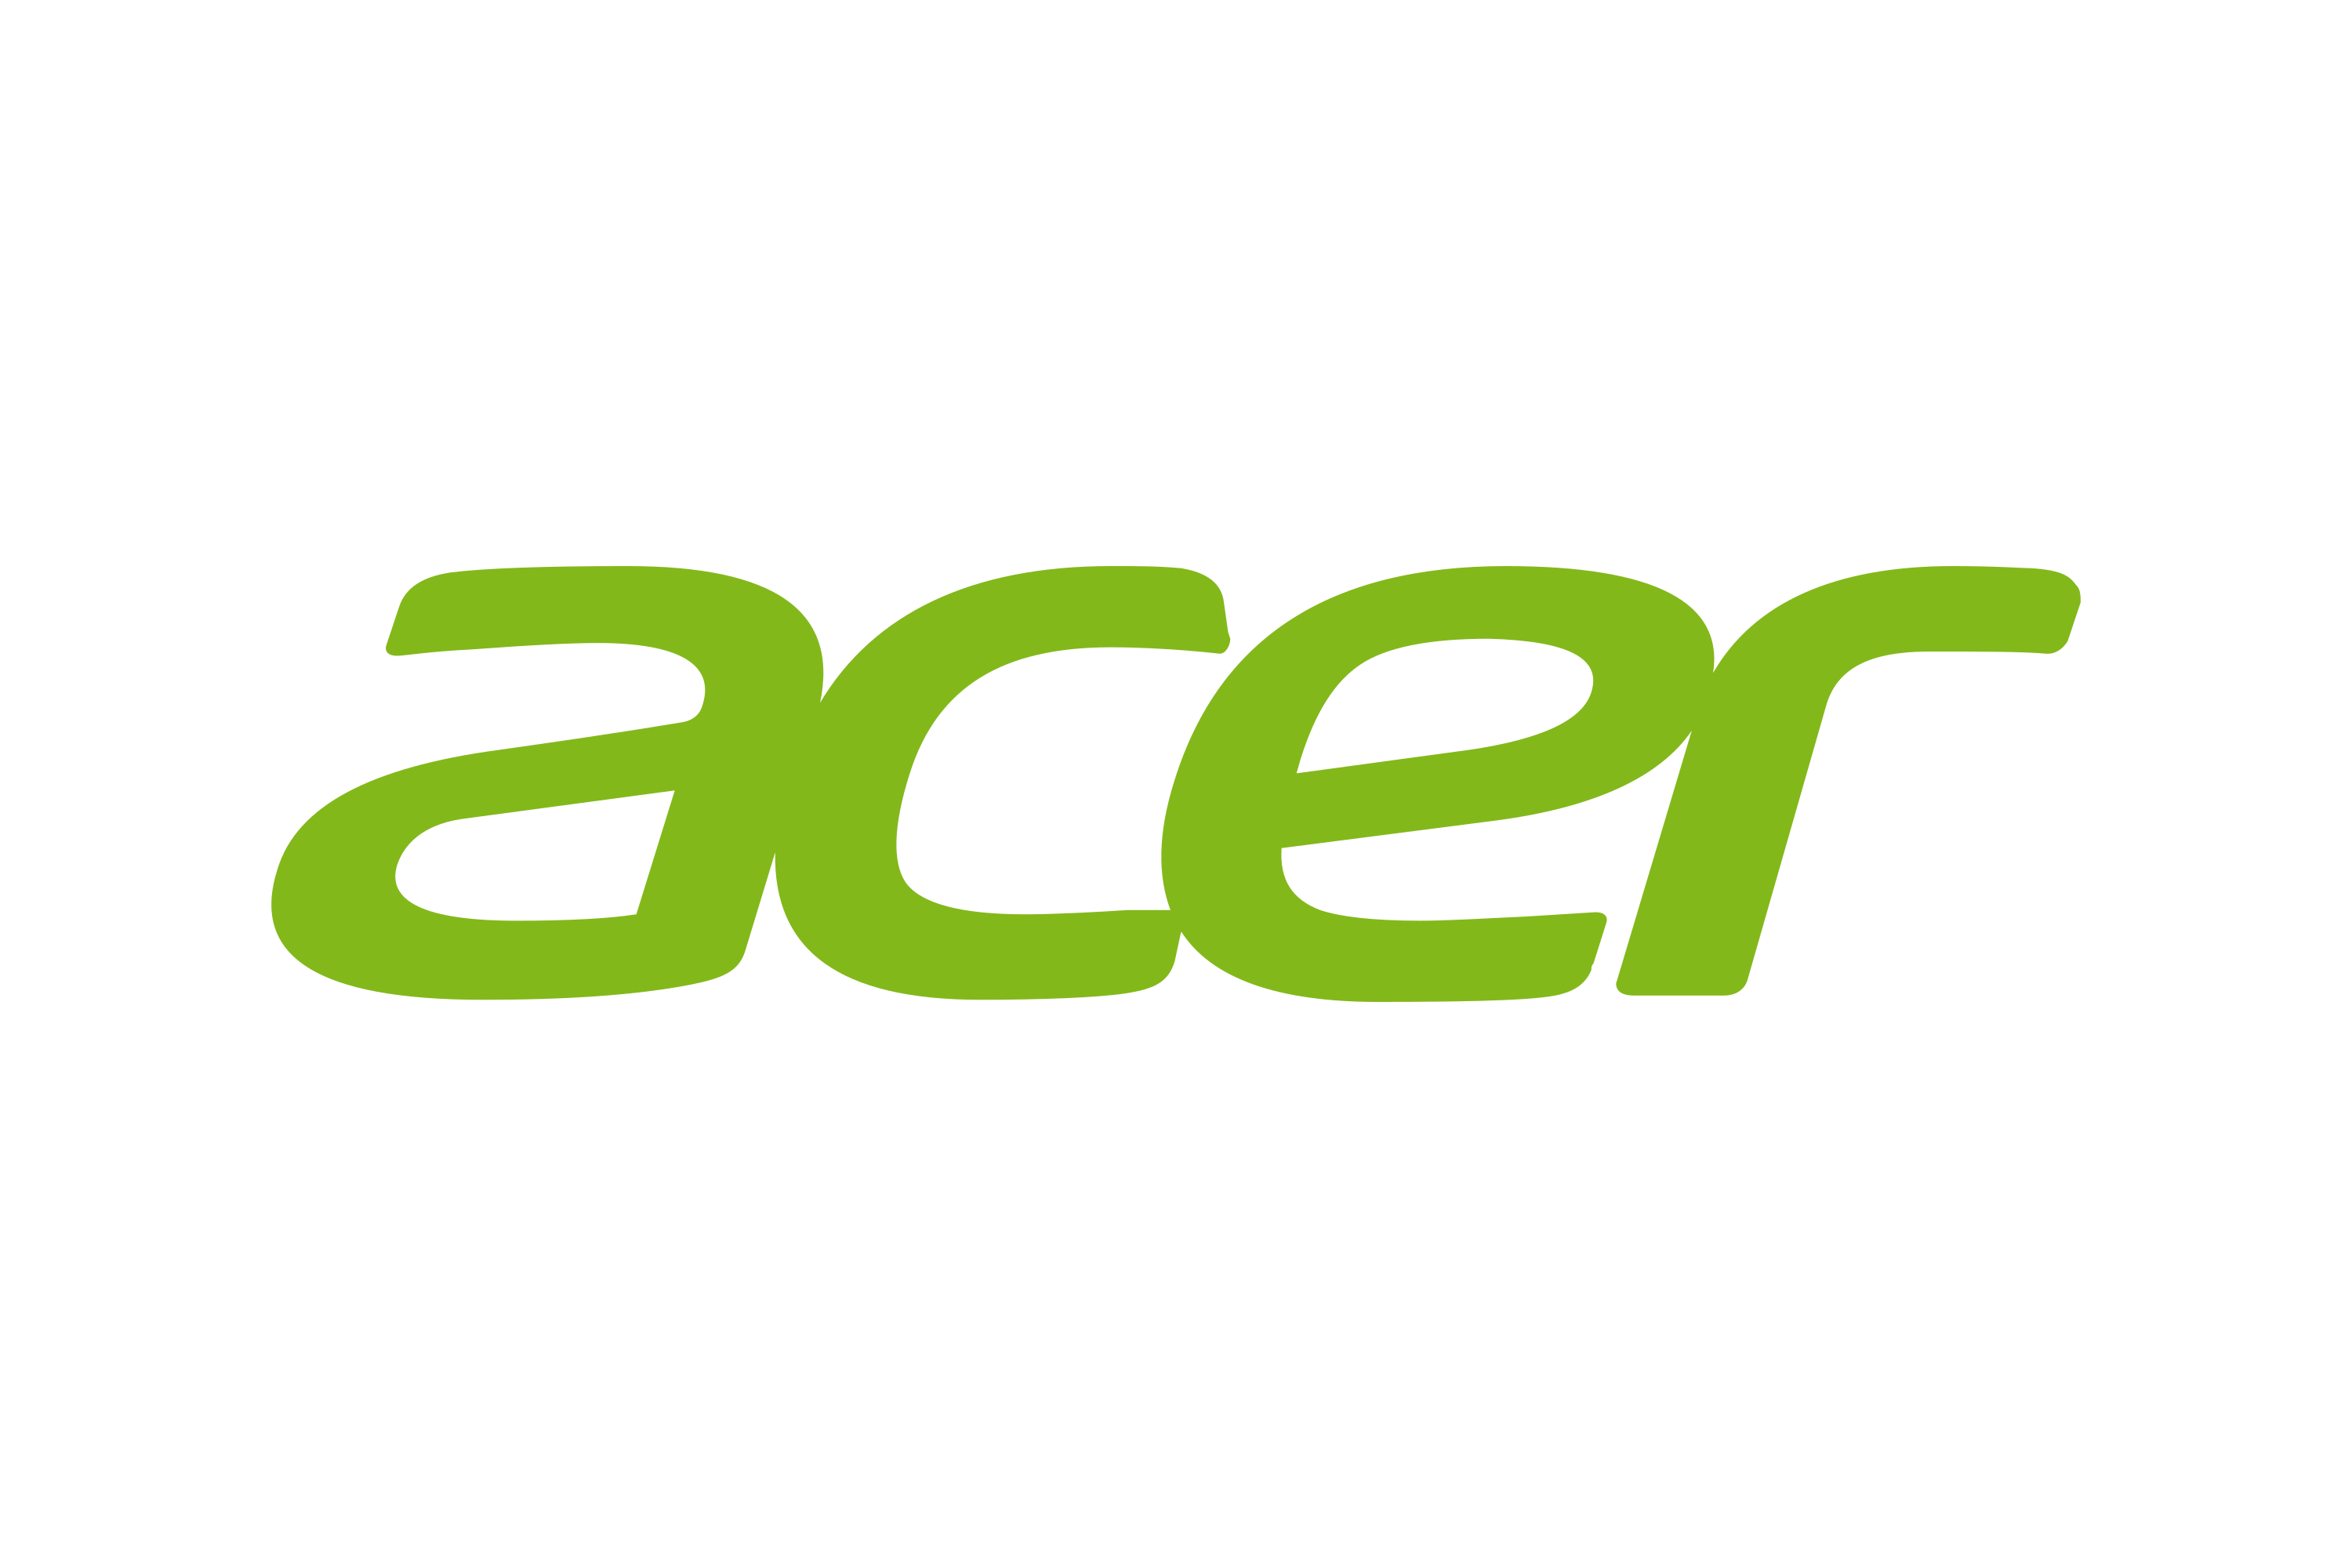 Download Acer Inc. Logo in SVG Vector or PNG File Format - Logo.wine